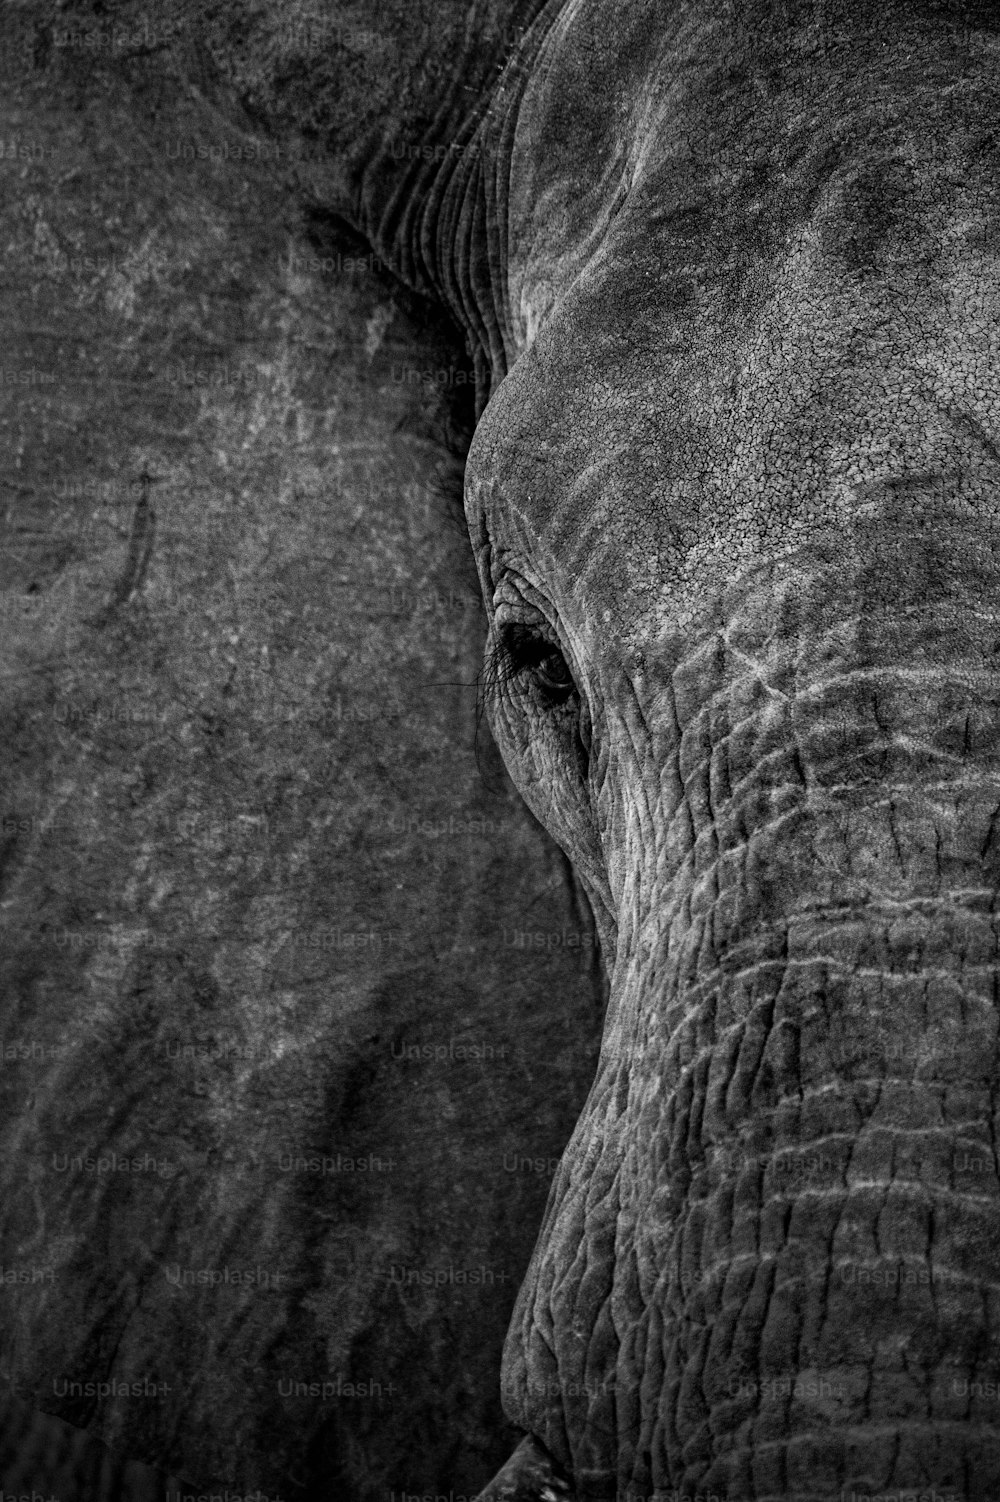 Una foto en blanco y negro de la cara de un elefante